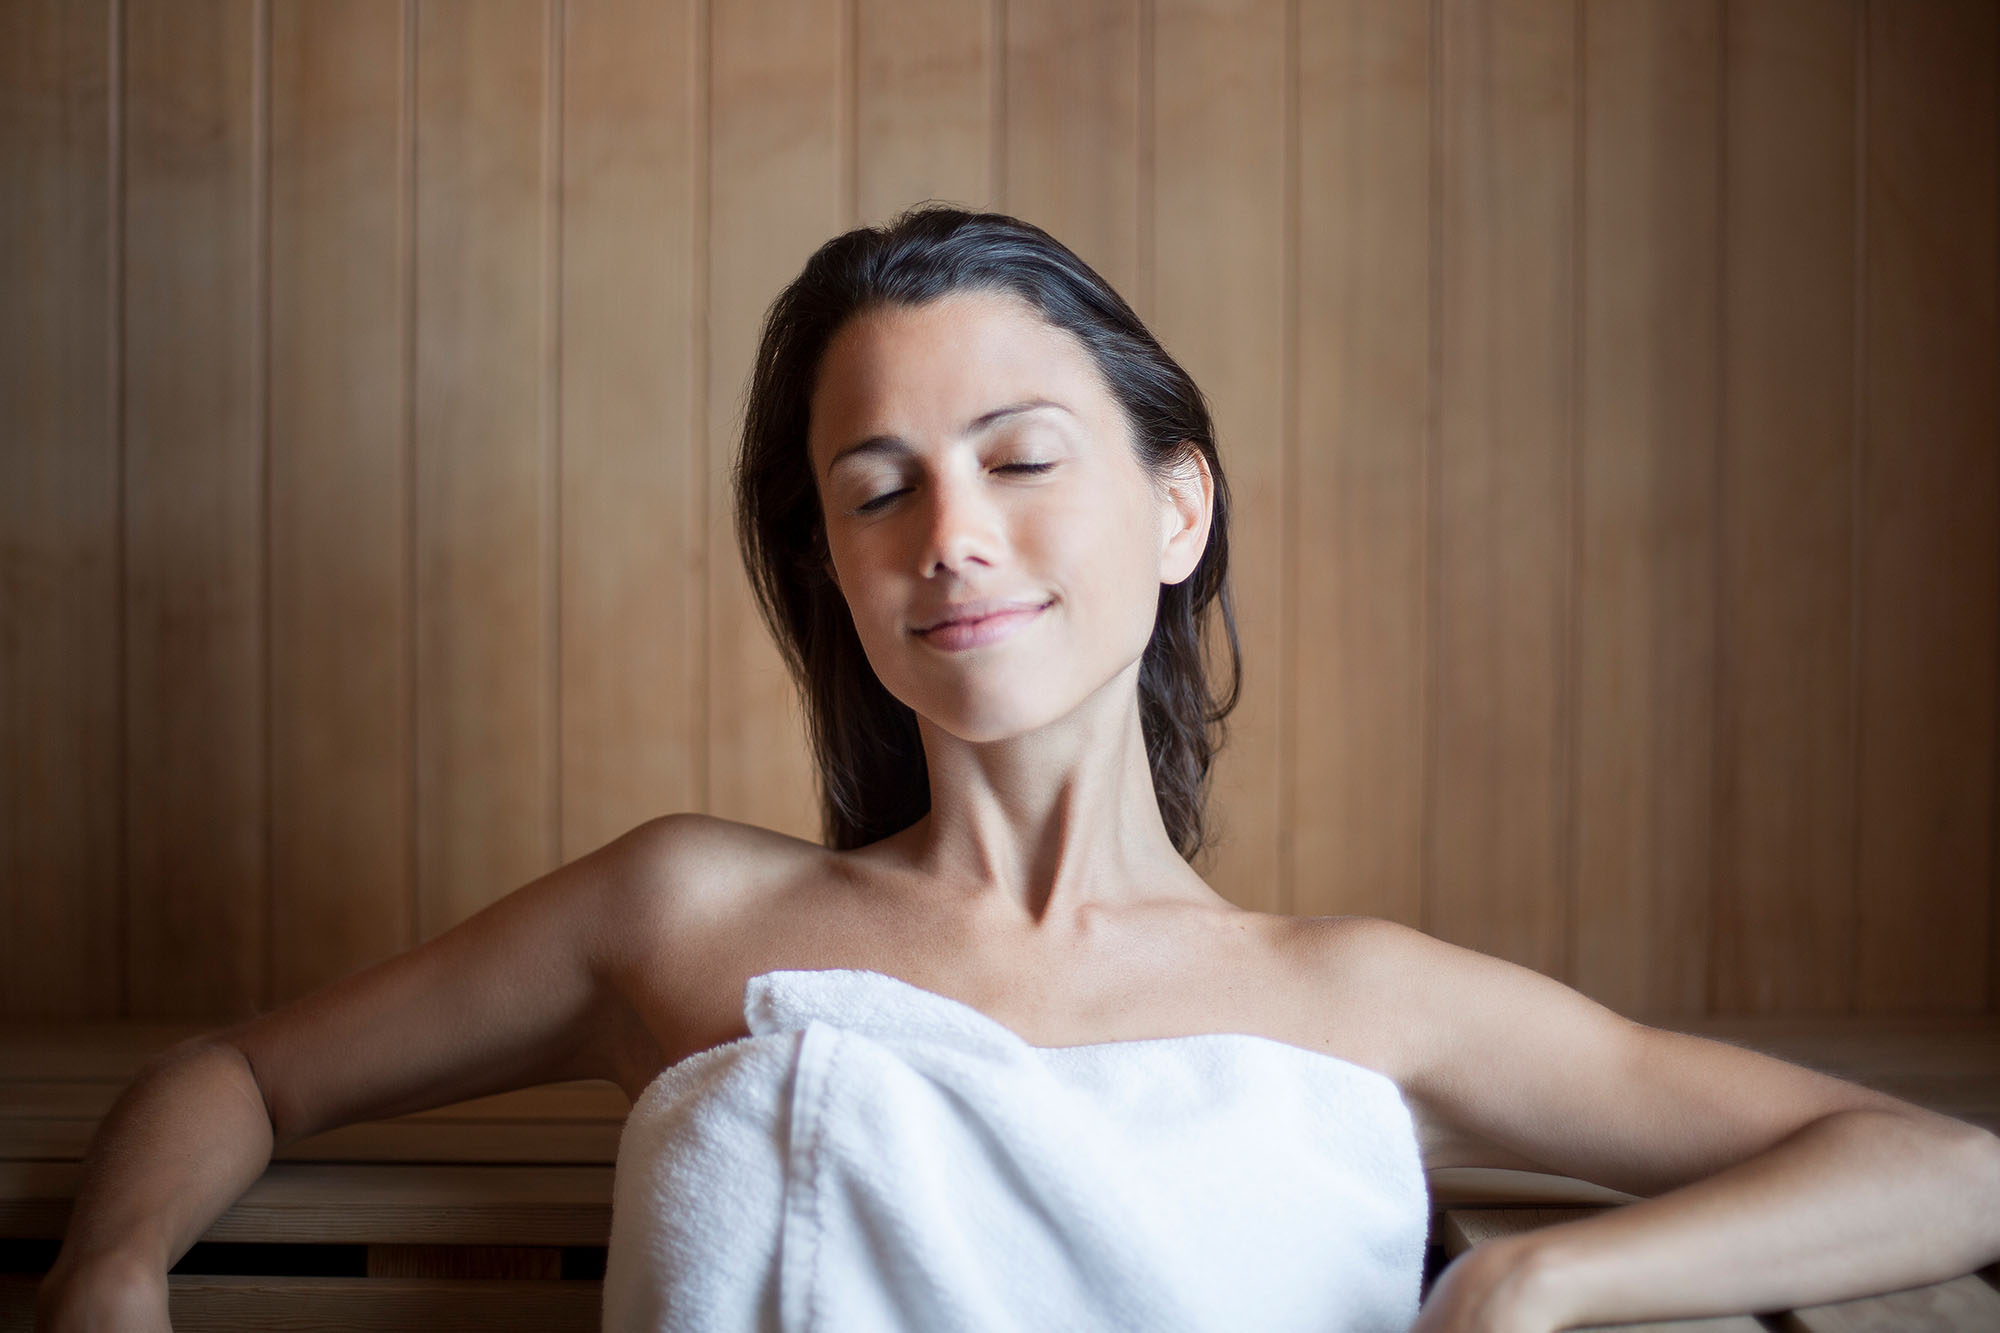 Aby zabieg przyniósł pozytywny efekt warto wiedzieć, jak korzystać z sauny